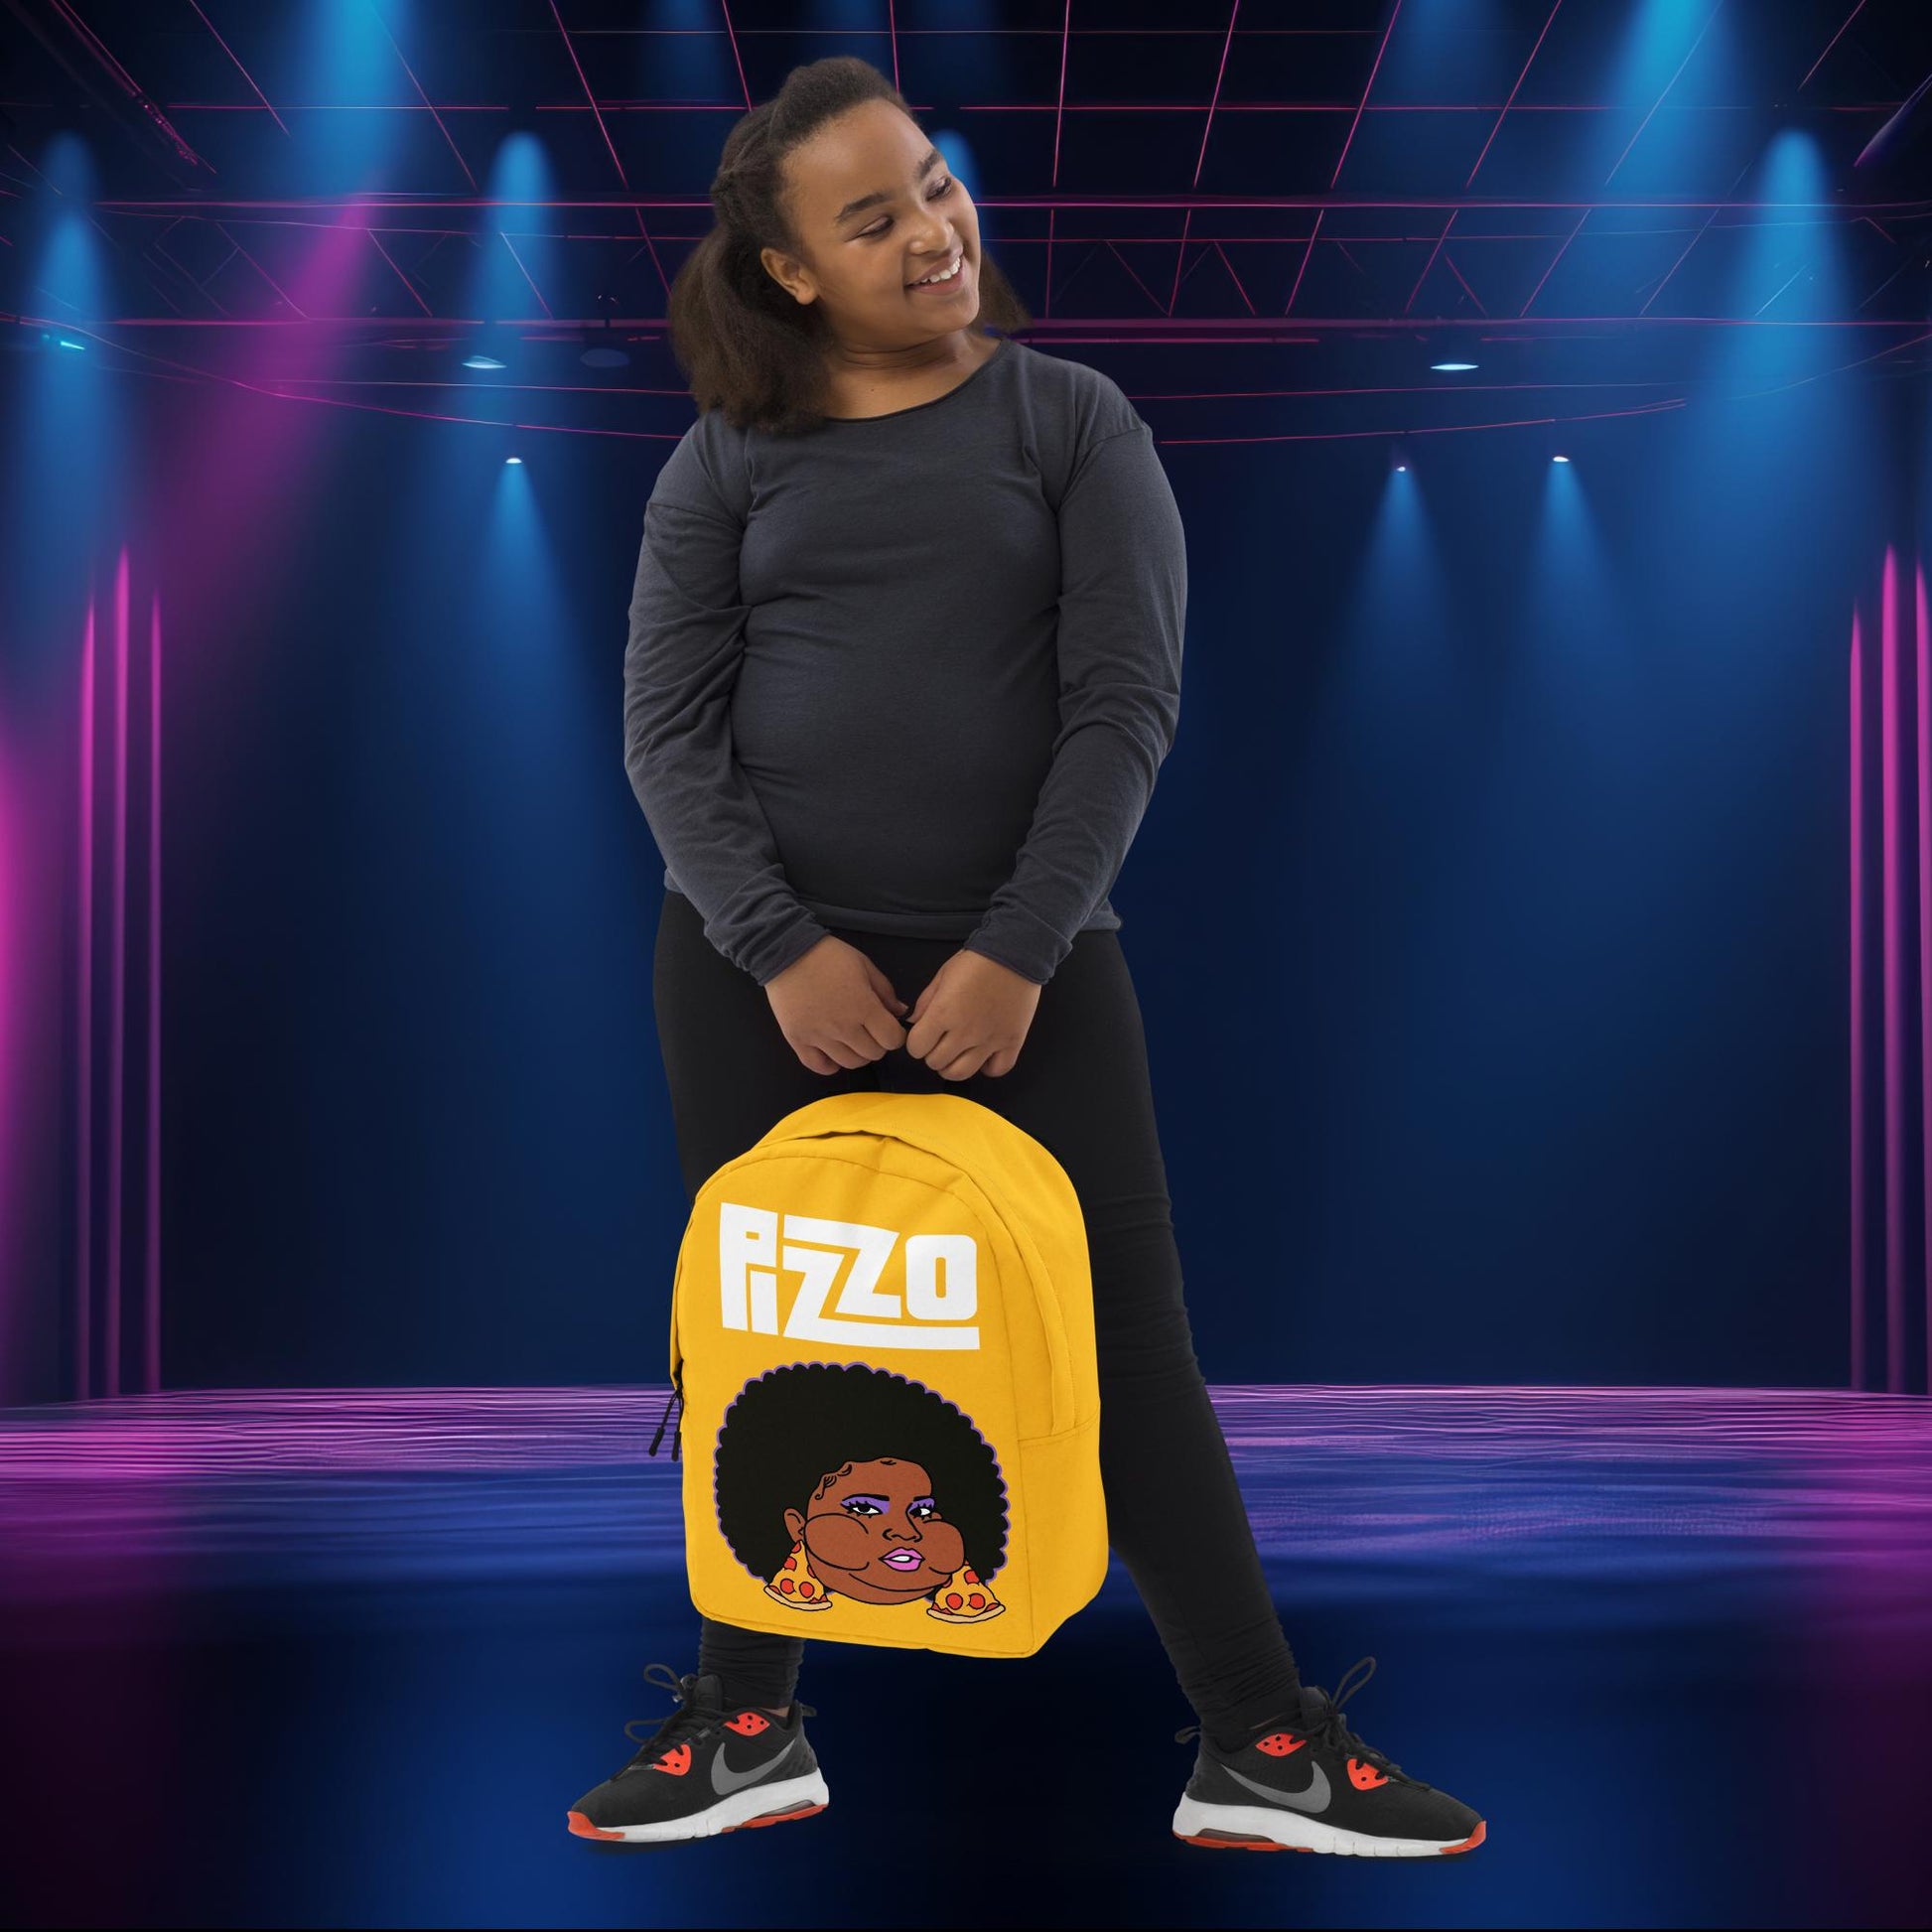 Pizzo Lizzo Pizza Lizzo Merch Lizzo Gift Song Lyrics Lizzo Backpack Next Cult Brand